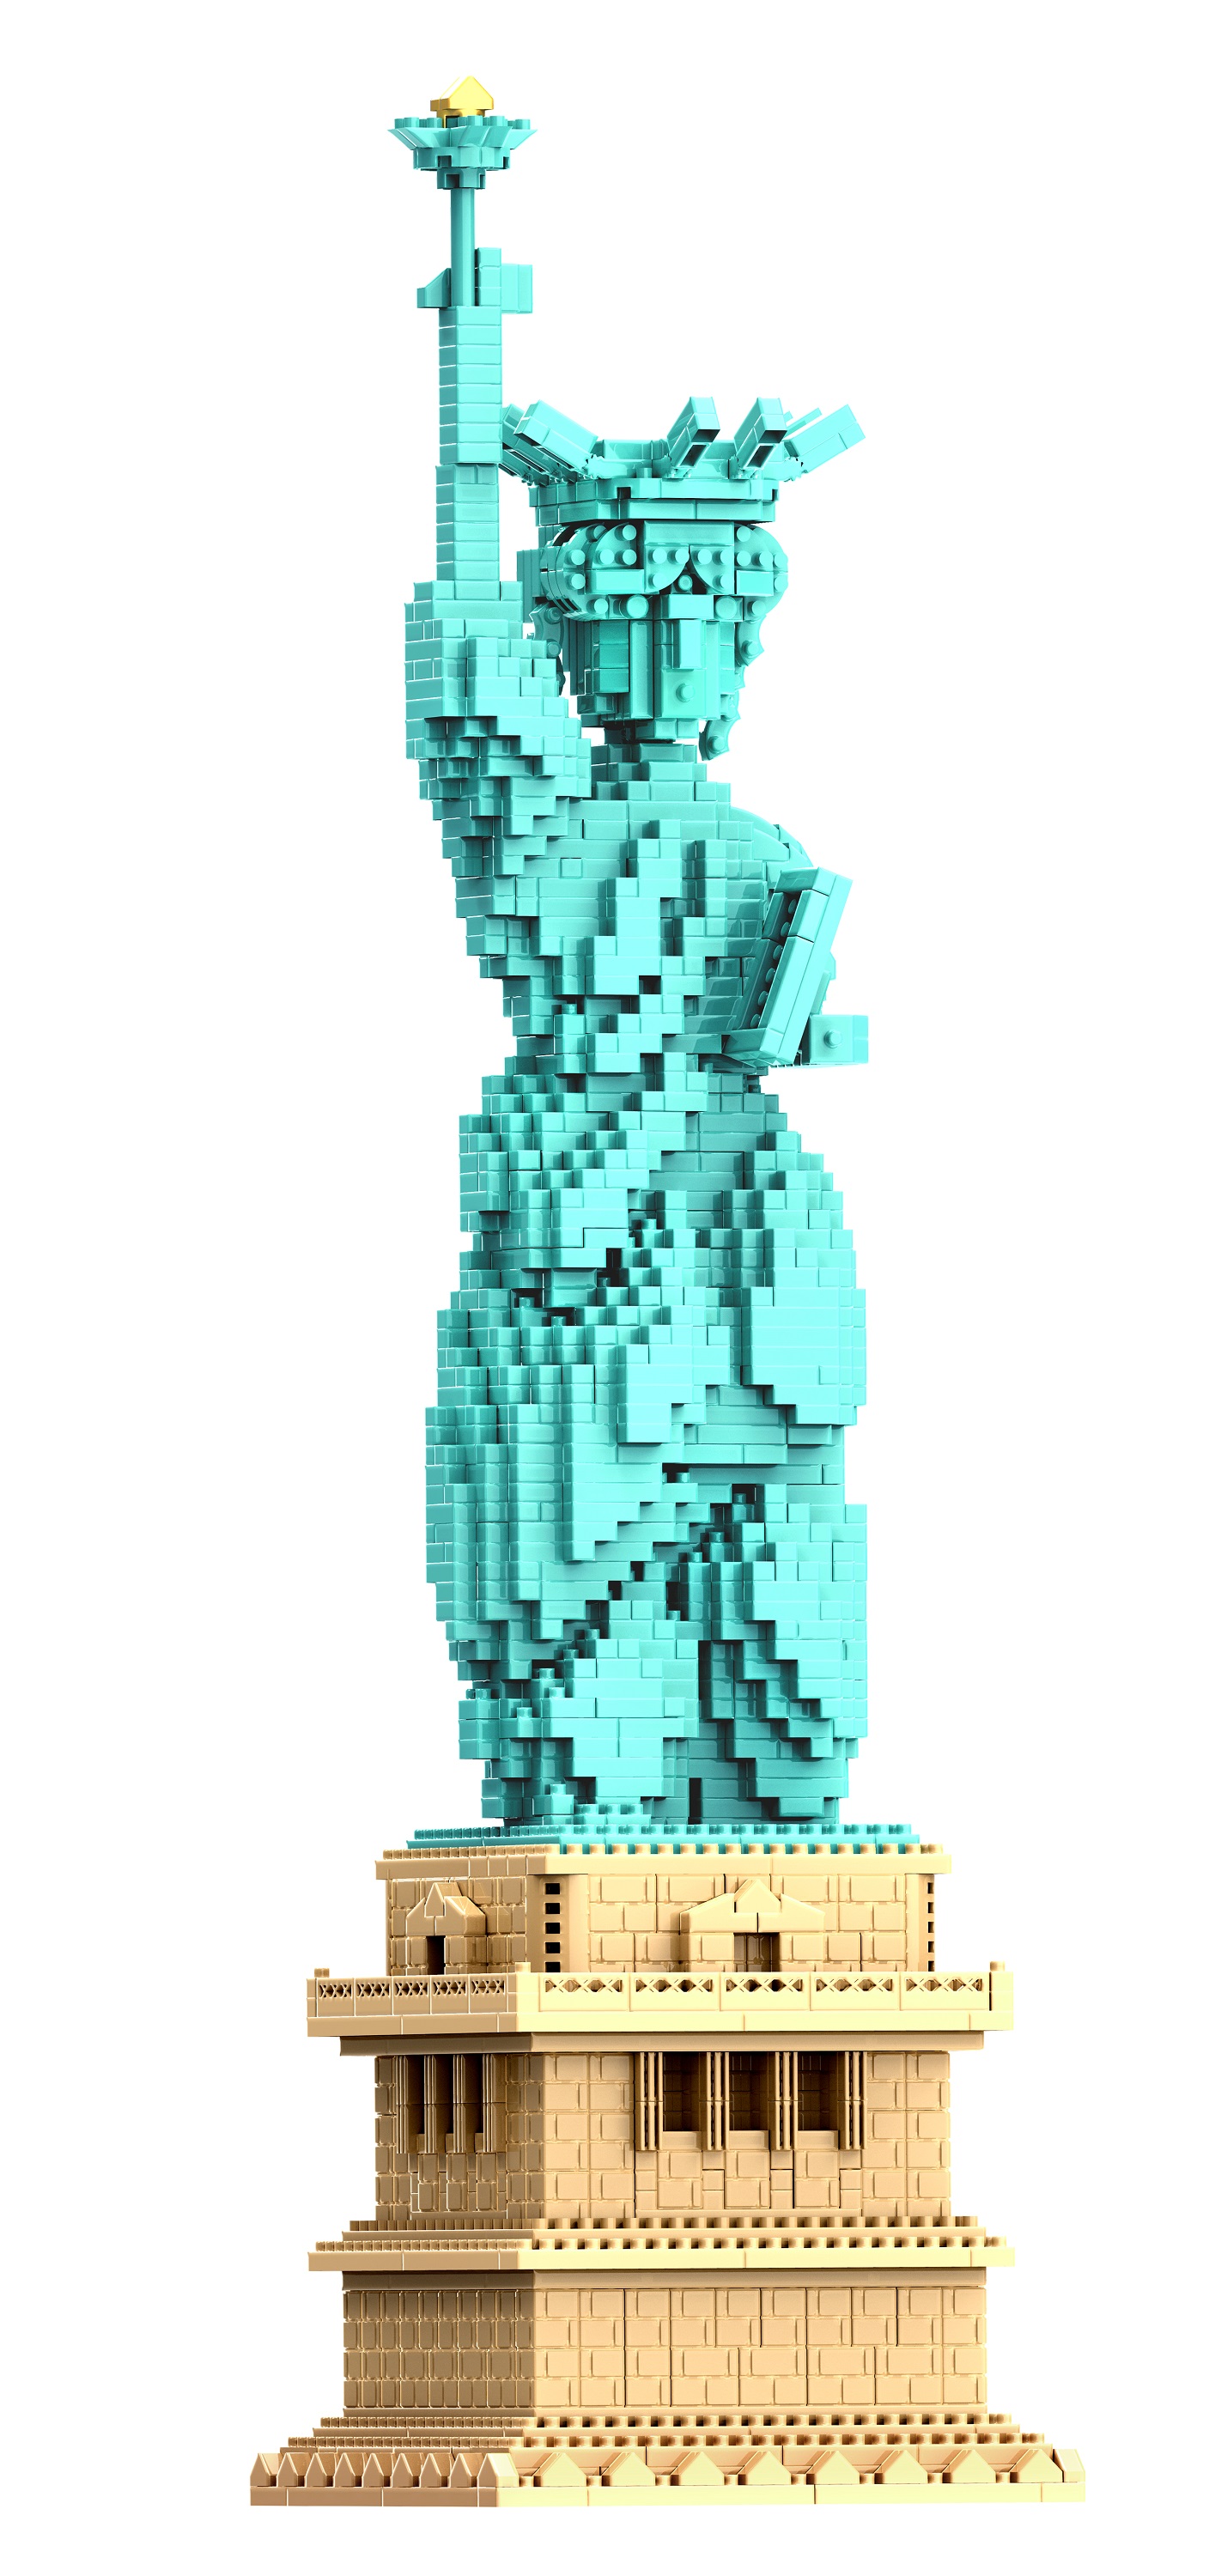 3D конструктор из миниблоков RTOY Статуя Свободы 2950 эл JM20810 конструктор 3д из миниблоков rtoy кафе мороженое на колесах 429 дет wl2047